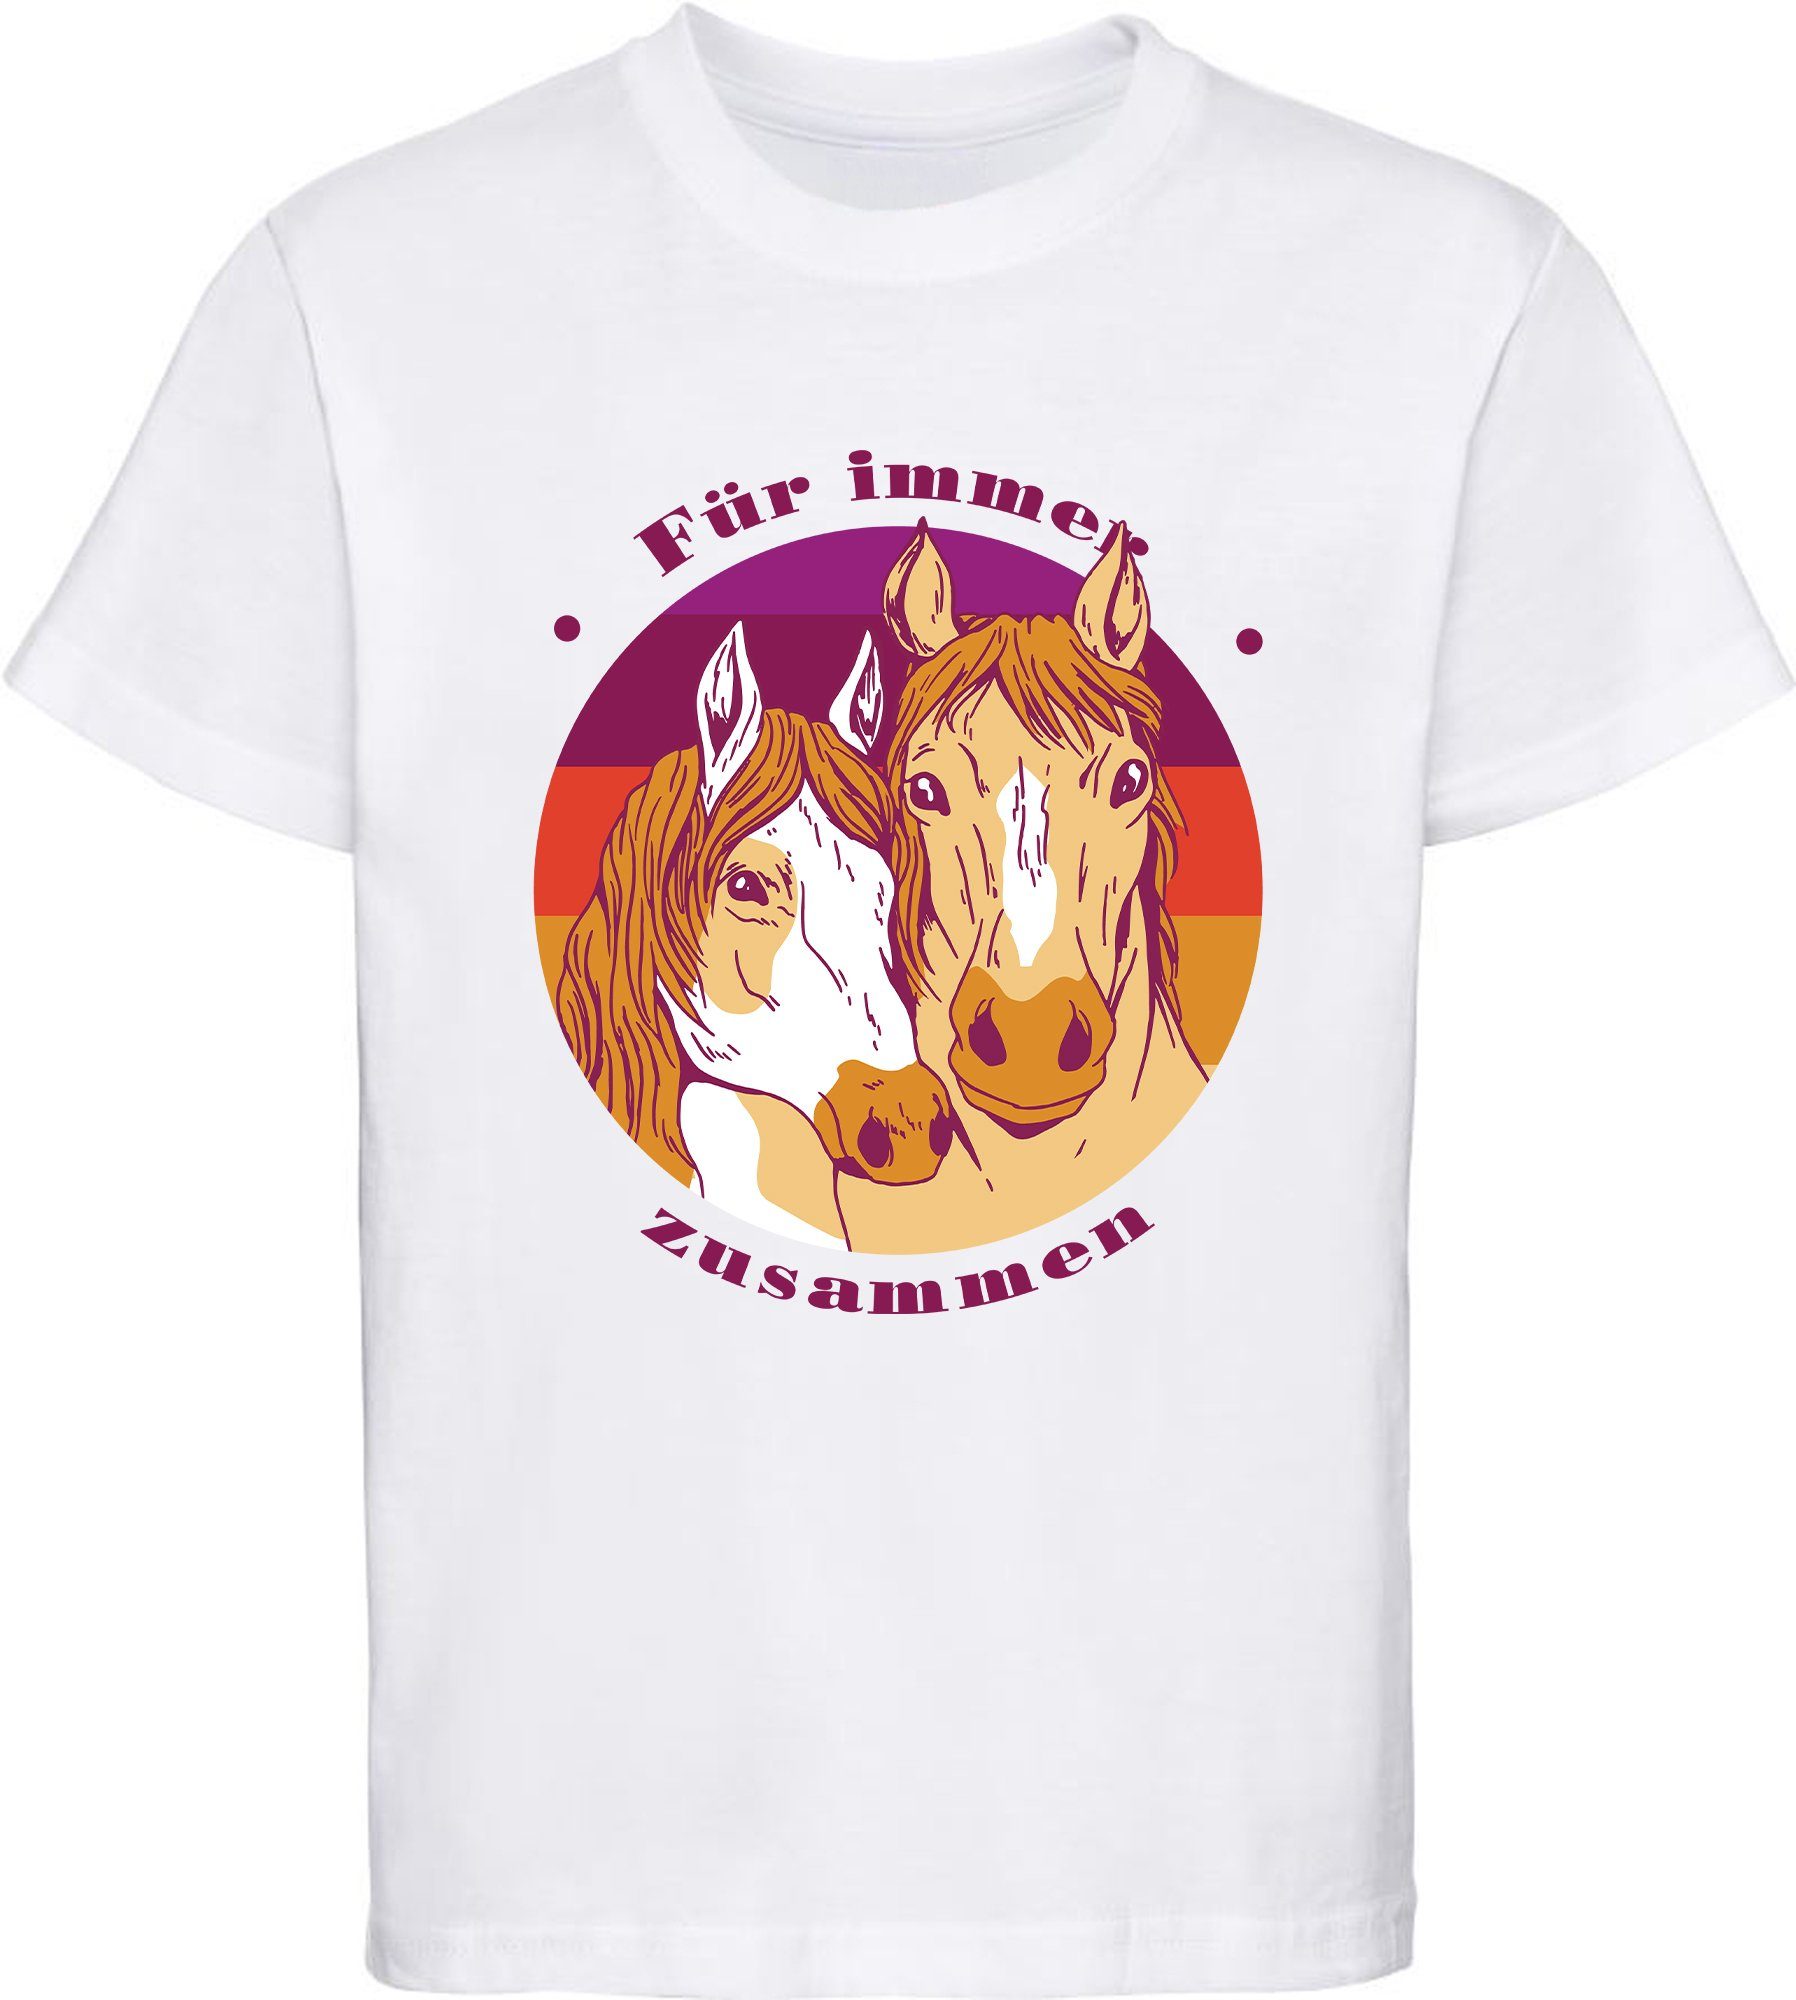 MyDesign24 Print-Shirt bedrucktes Baumwollshirt T-Shirt mit weiss i148 Aufdruck, Pferdeköpfe zwei Mädchen